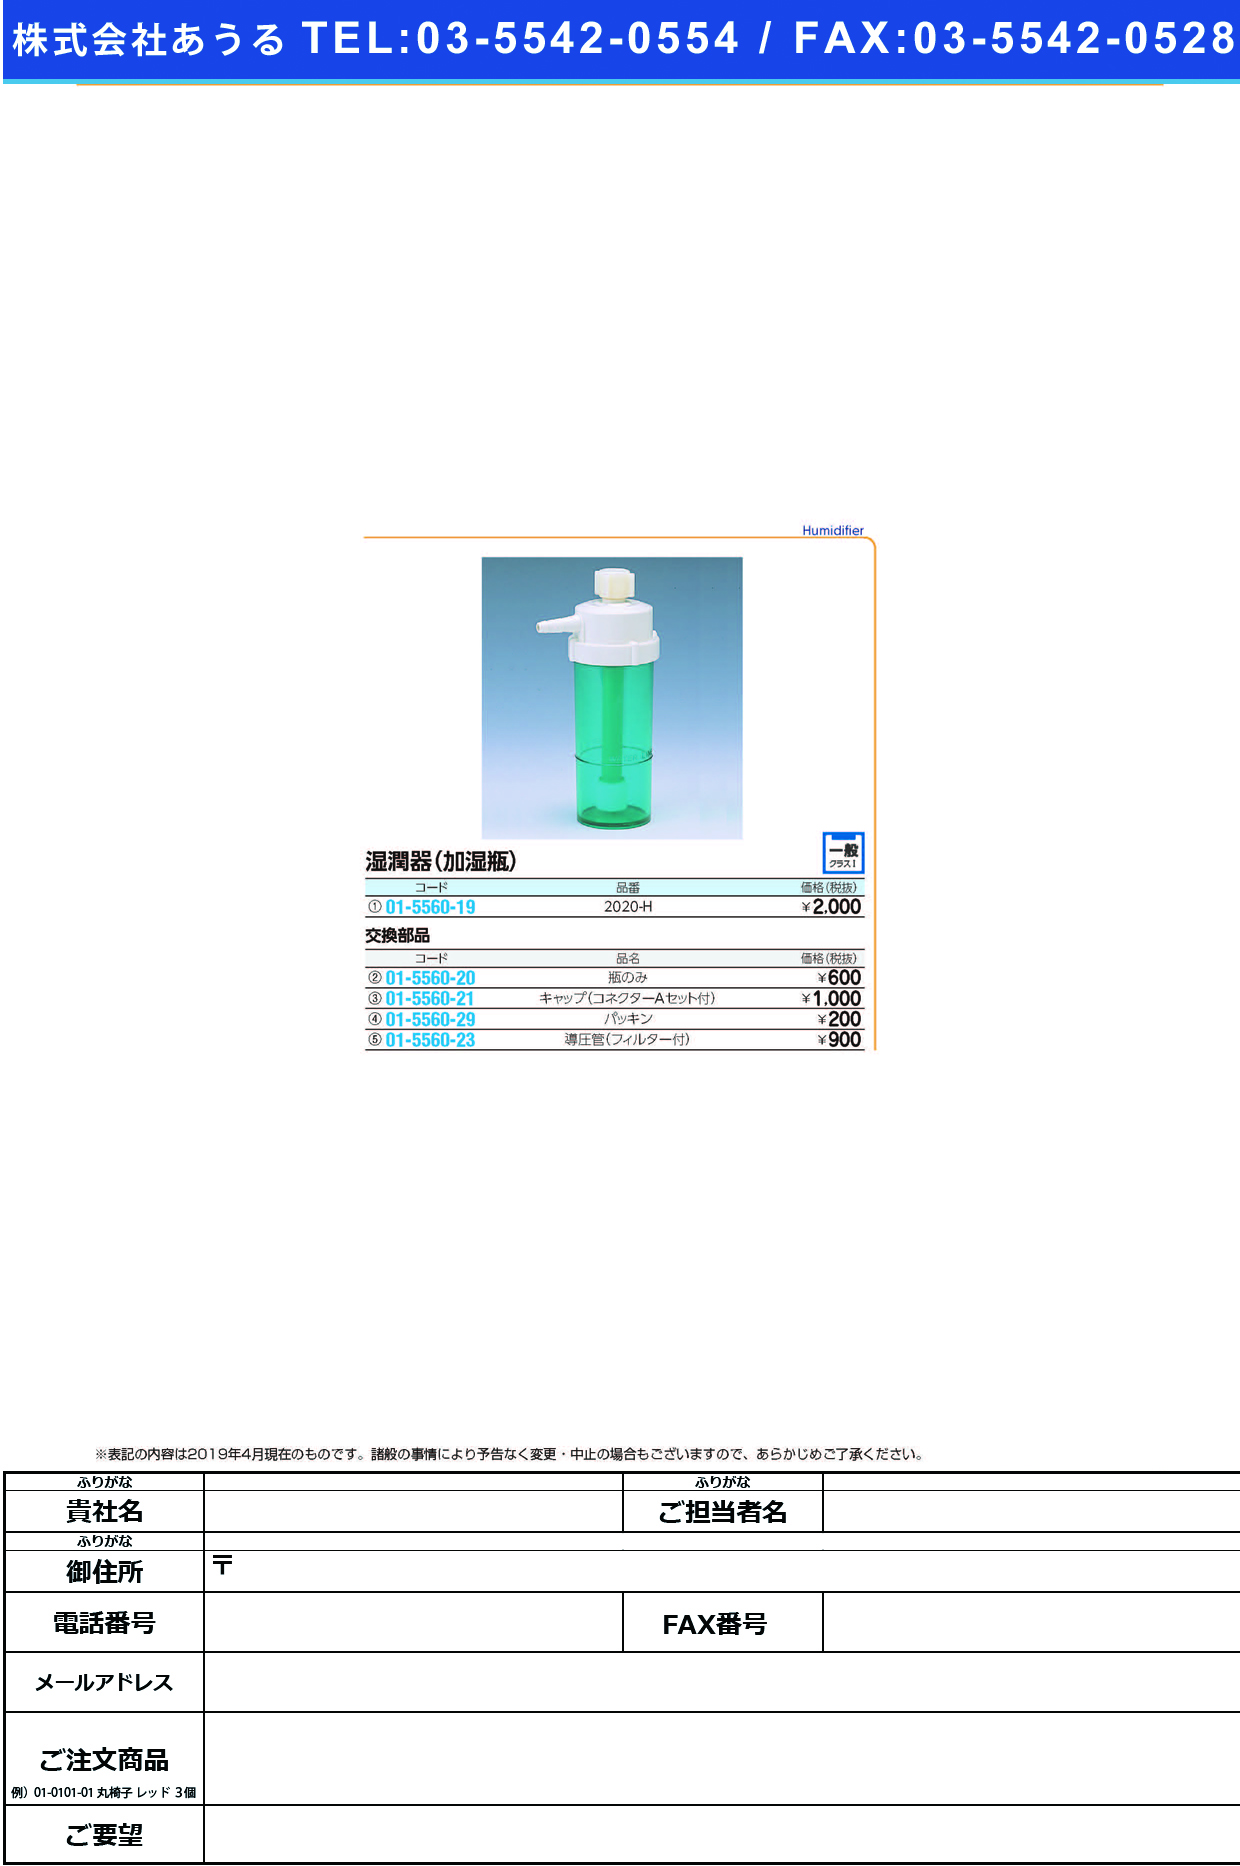 (01-5560-29)加湿瓶用パッキン 2020-Hﾖｳ ｶｼﾂﾋﾞﾝﾖｳﾊﾟｯｷﾝ(ブルークロス・エマージェンシー)【1個単位】【2019年カタログ商品】